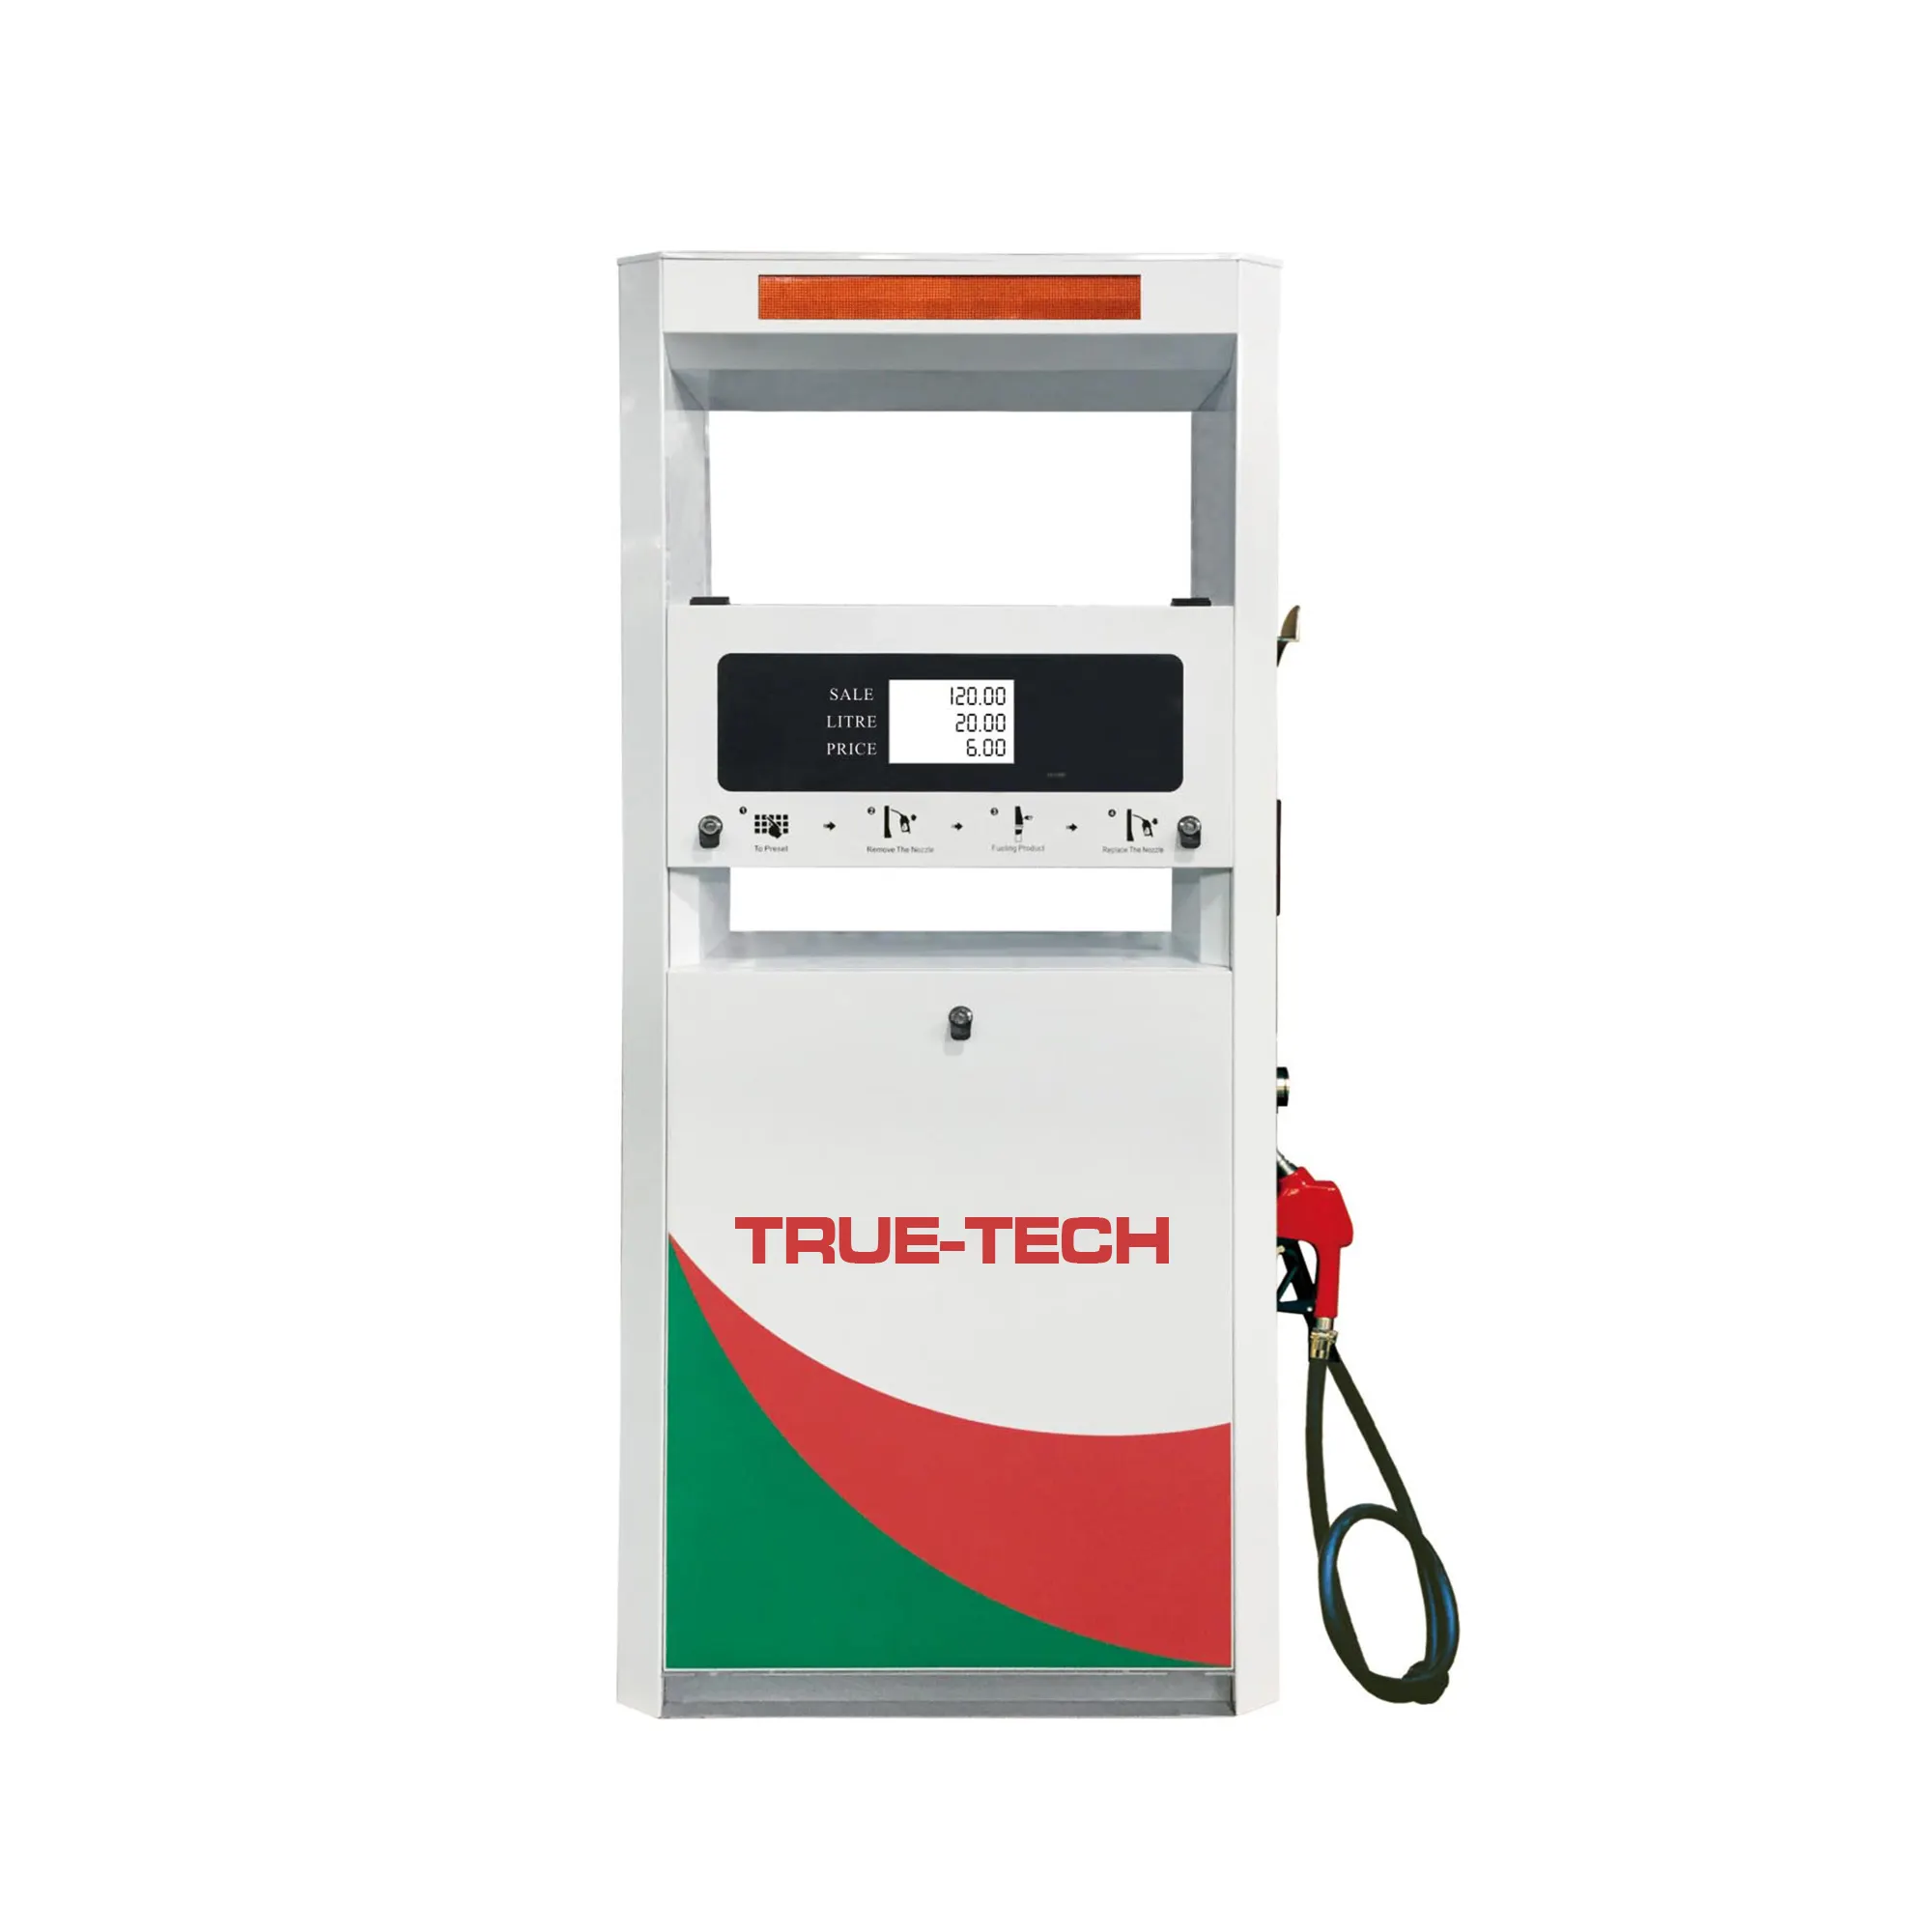 Benzin-Diesel-Kraftstoffsp ender maschine für Tankstellen-Schwenk pumpe